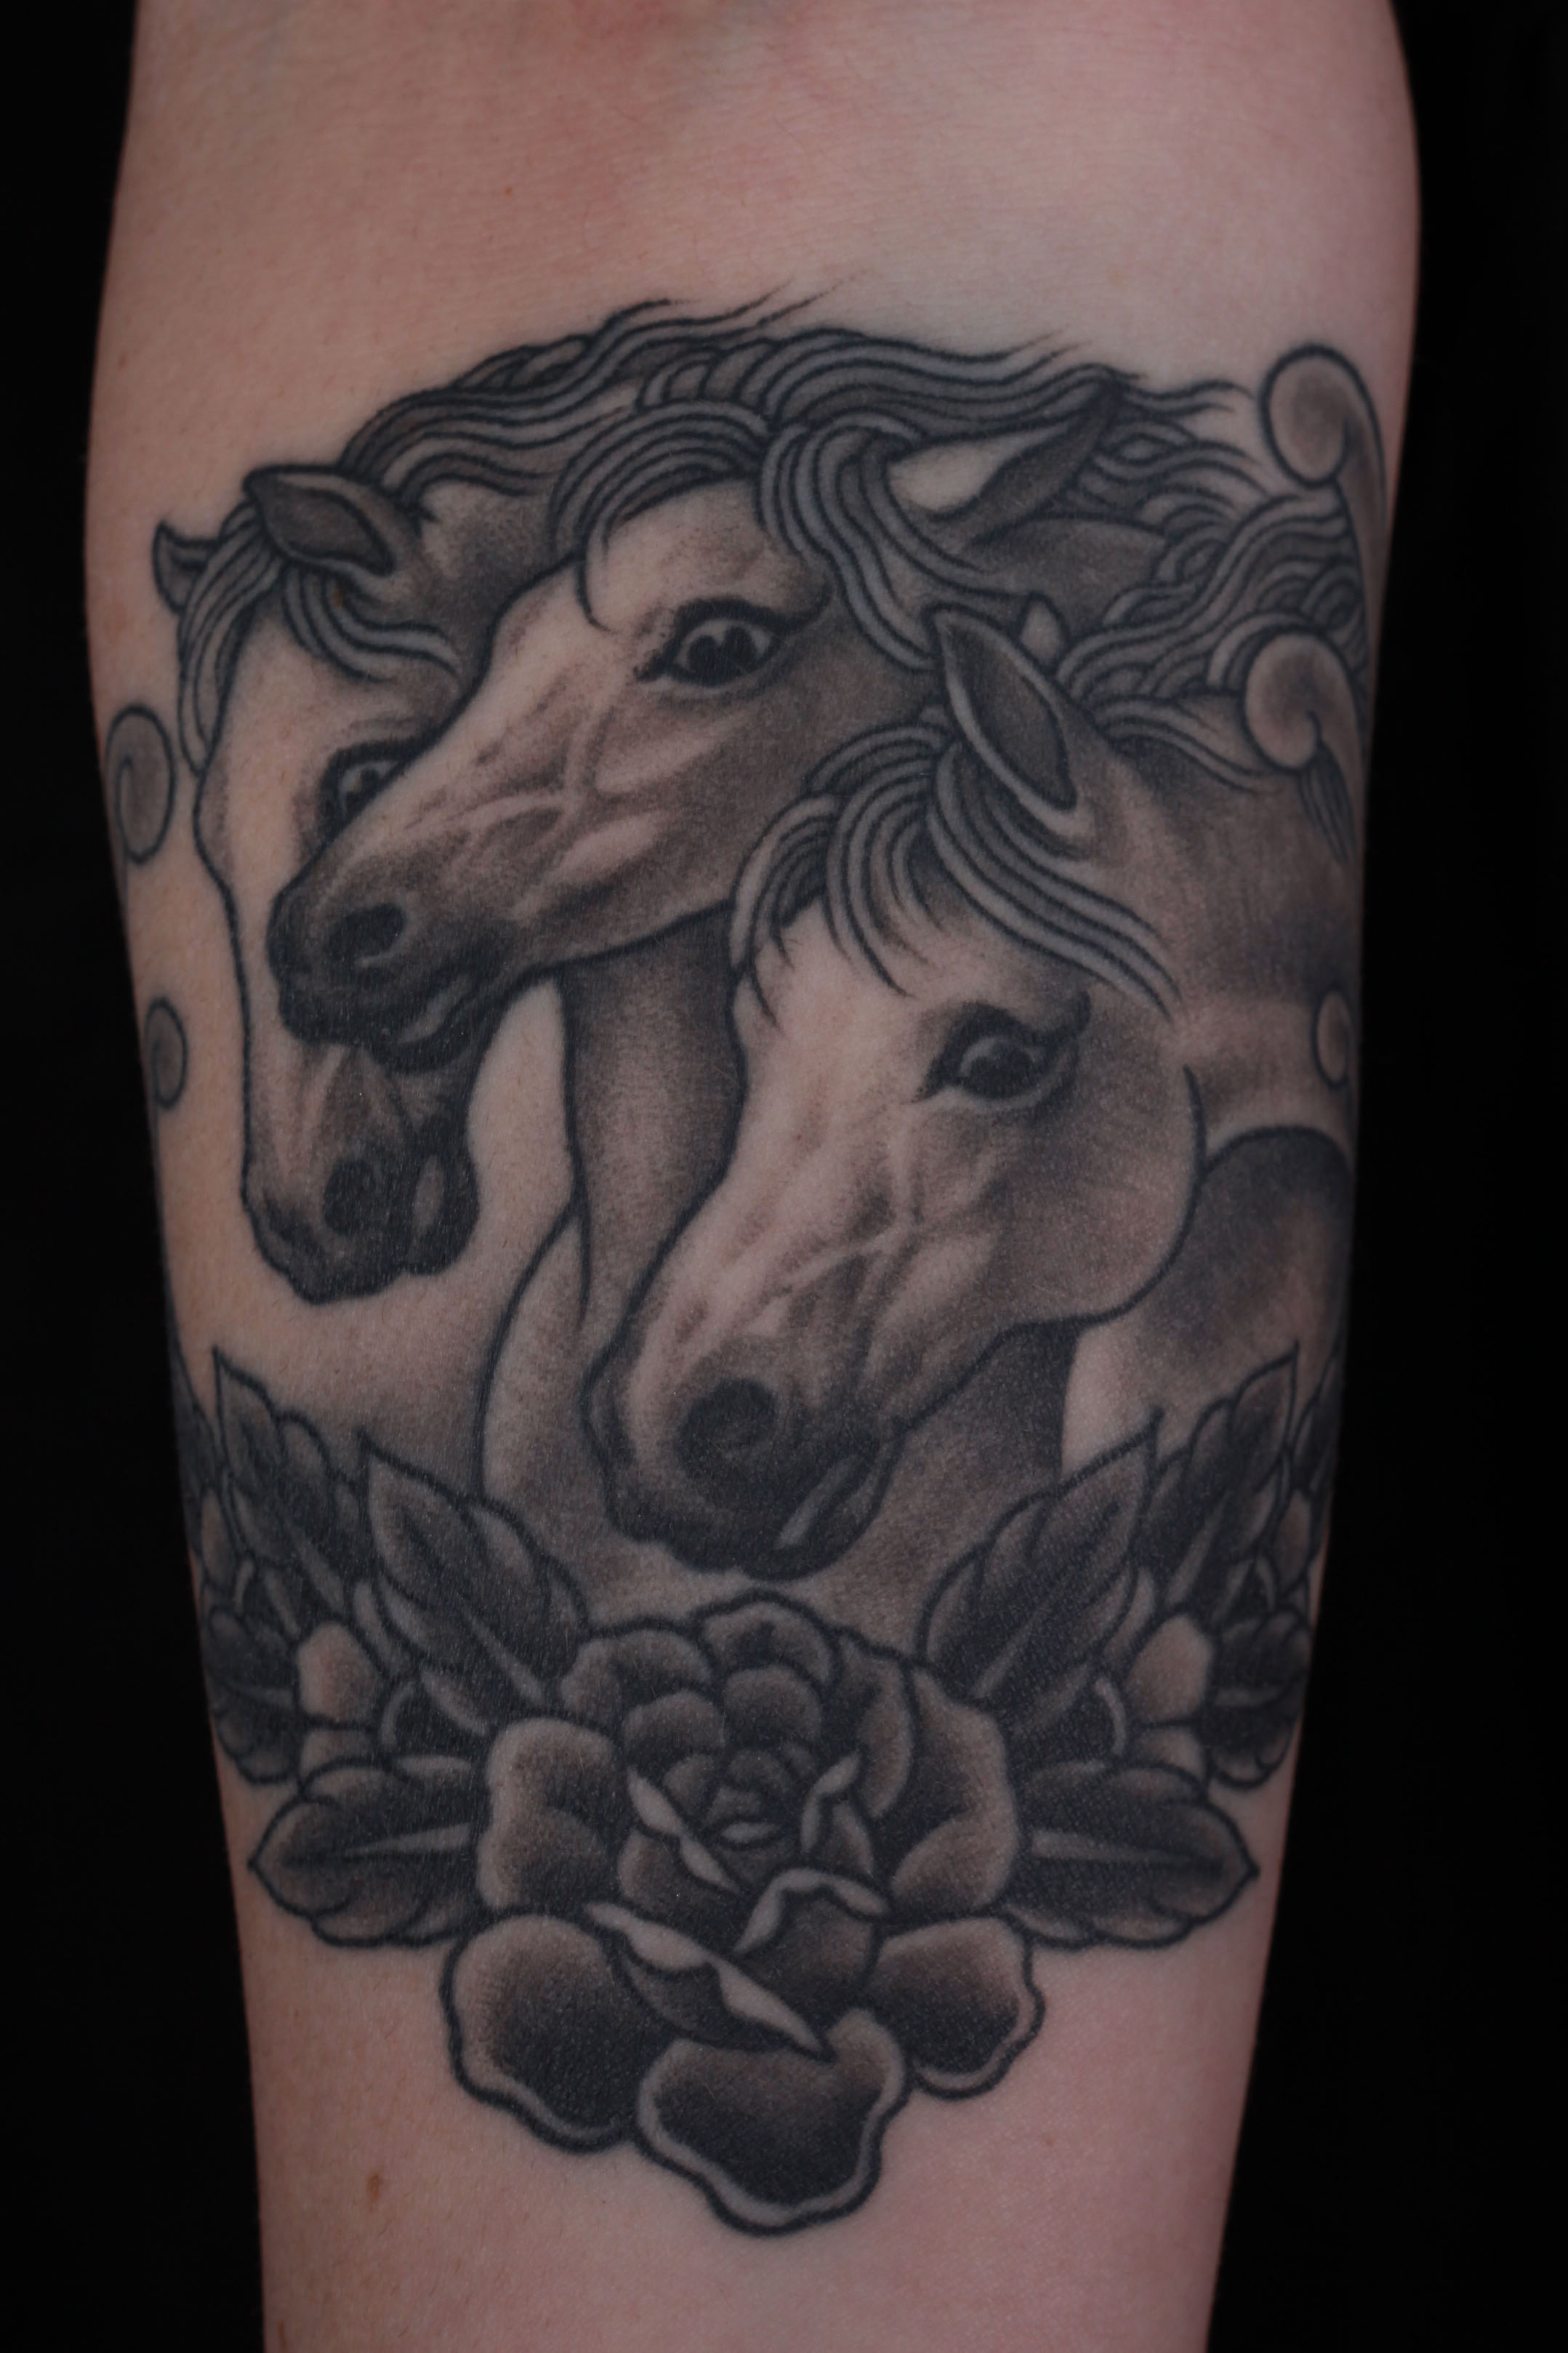 brian-thurow-dedication-tattoo-forearm-black-and-grey-pharaohs-horses